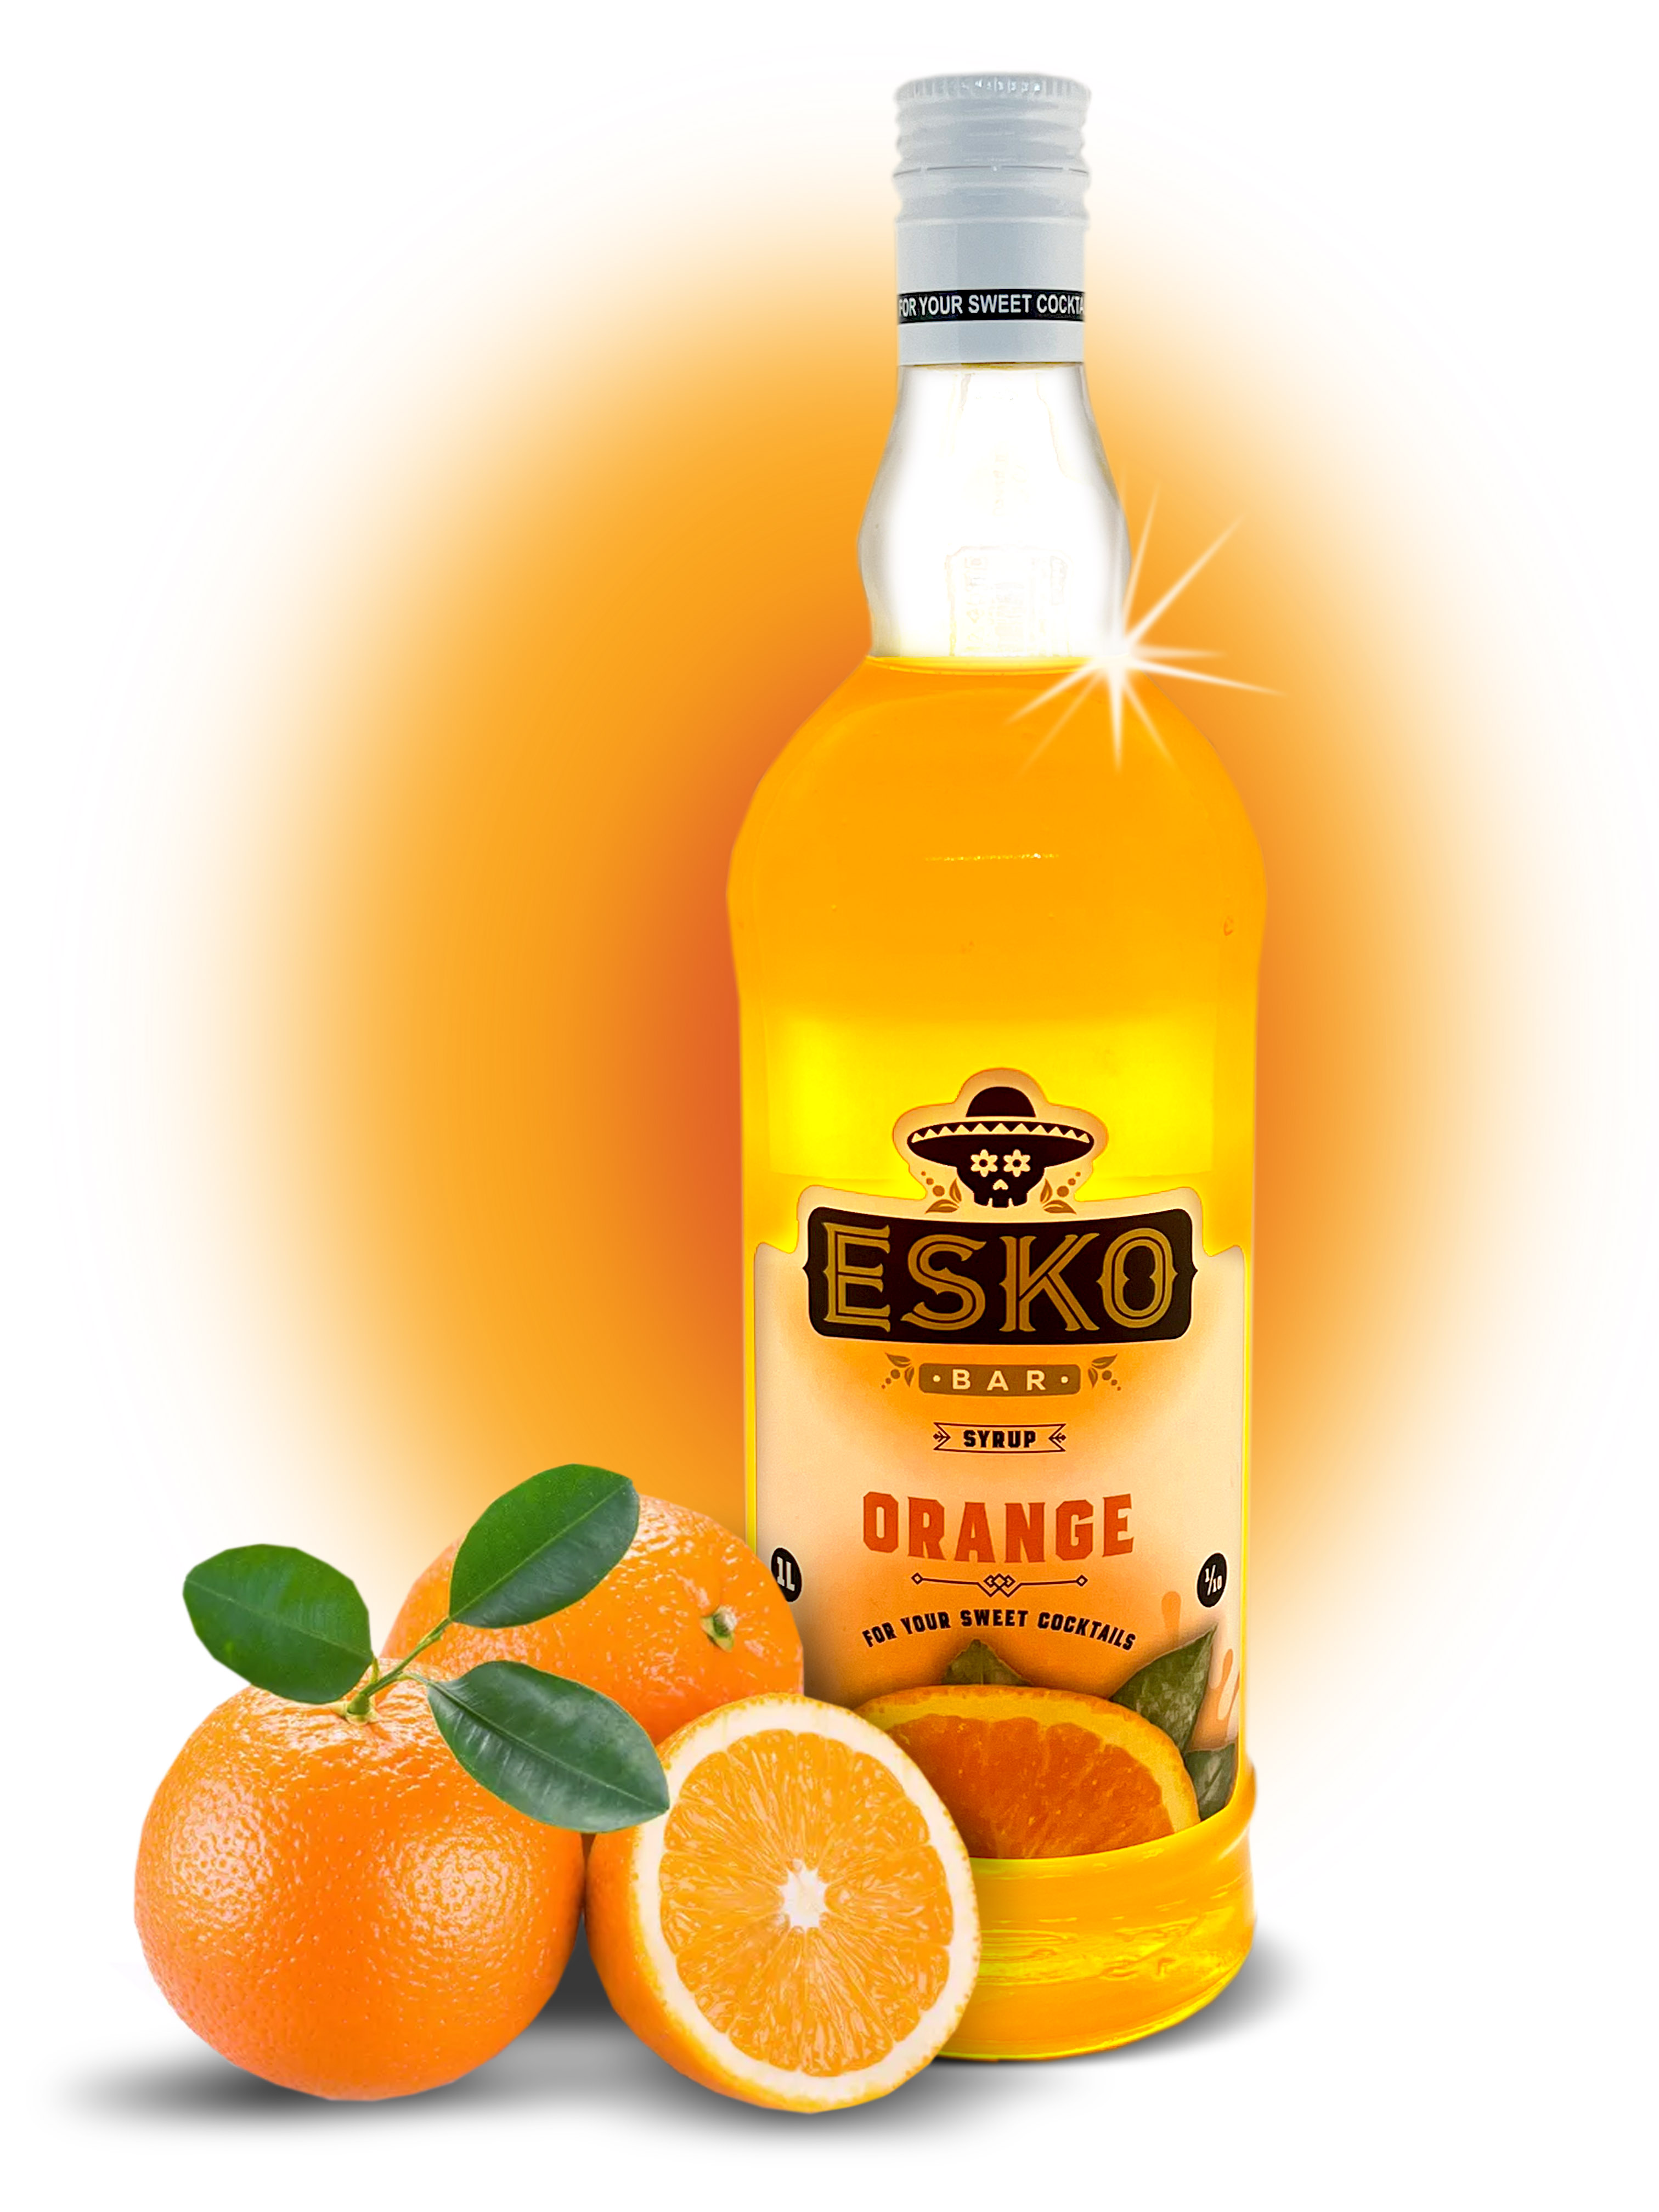 Сироп Esko Bar Orange (1L) изображение 1